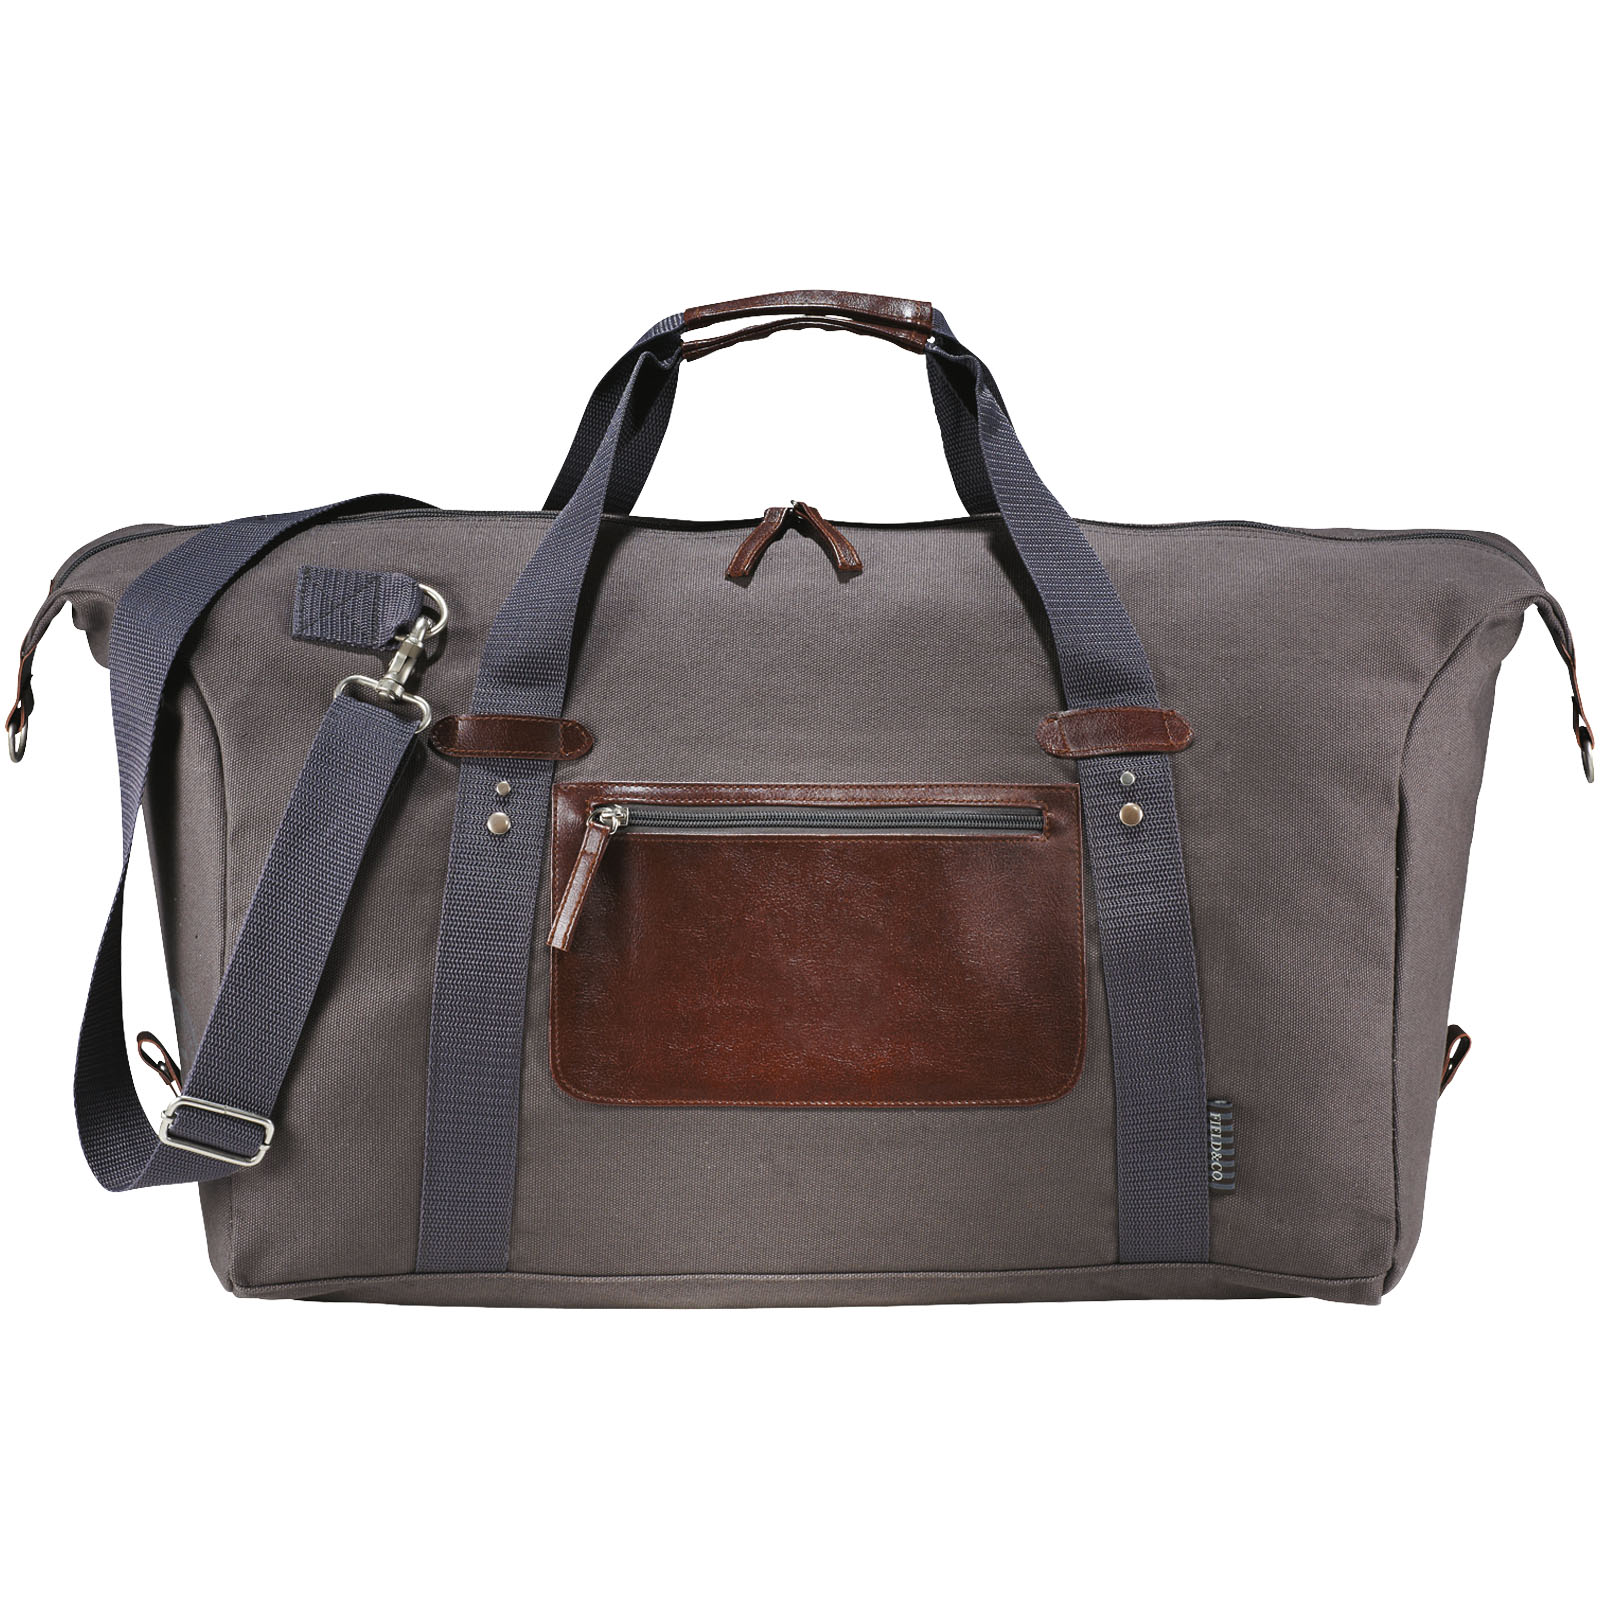 Advertising Travel bags - Classic duffel bag 37L - 1